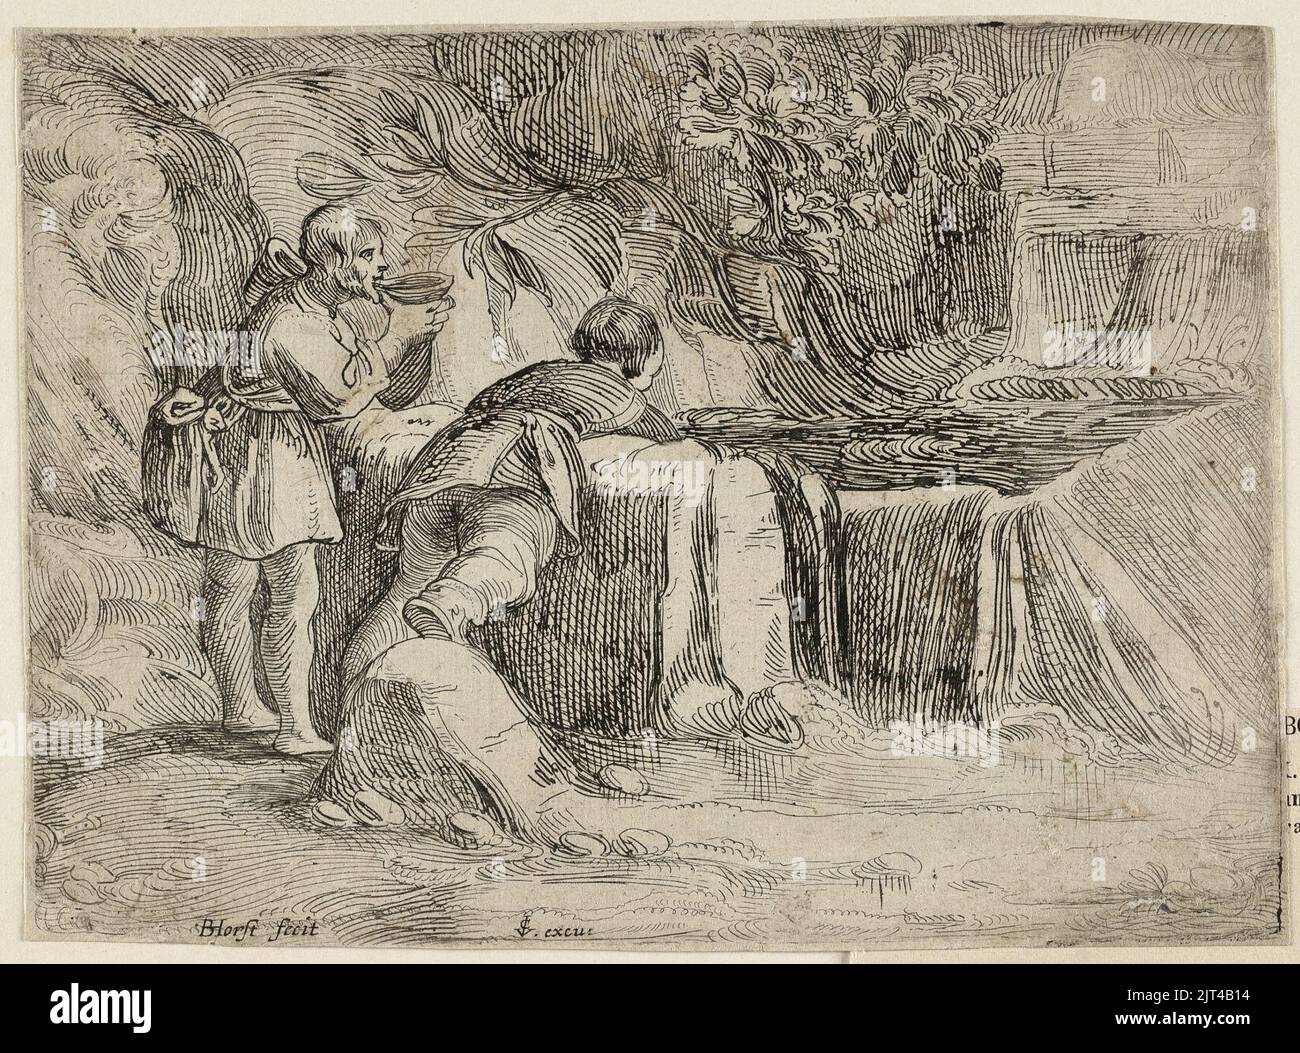 Twee mannen bij een bron in de rotsen. De een drinkt uit een nap, de ander, op de rug gezien, buigt zich voorover om water te scheppen uit de bron. Stockfoto